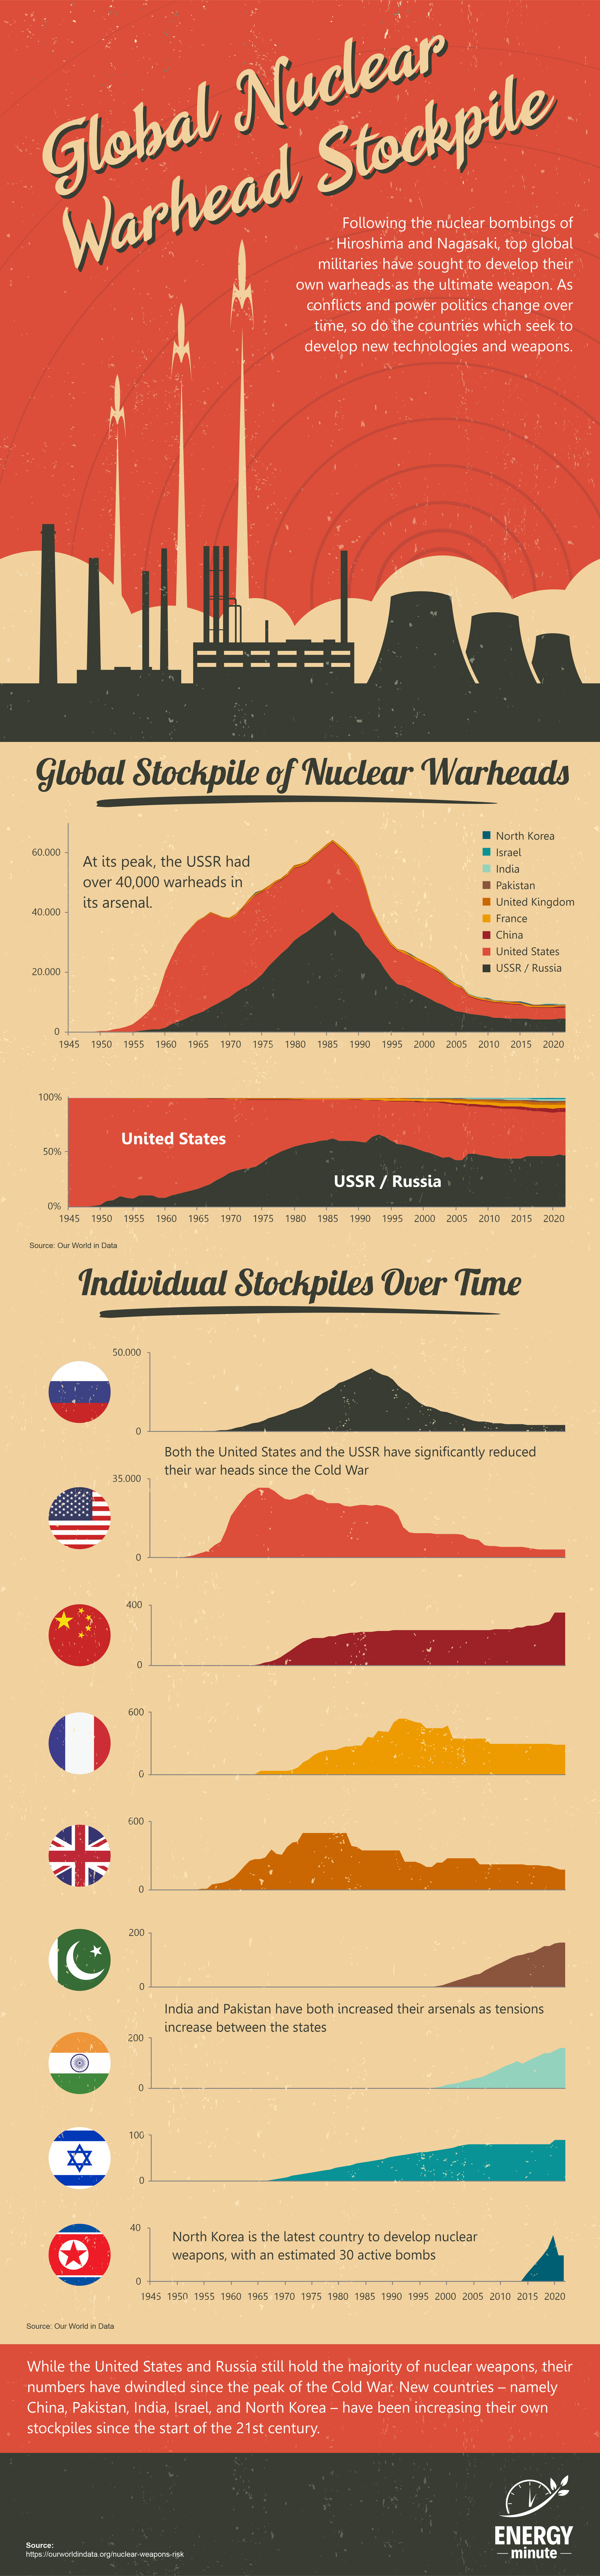 Global nuclear weapon stockpiles